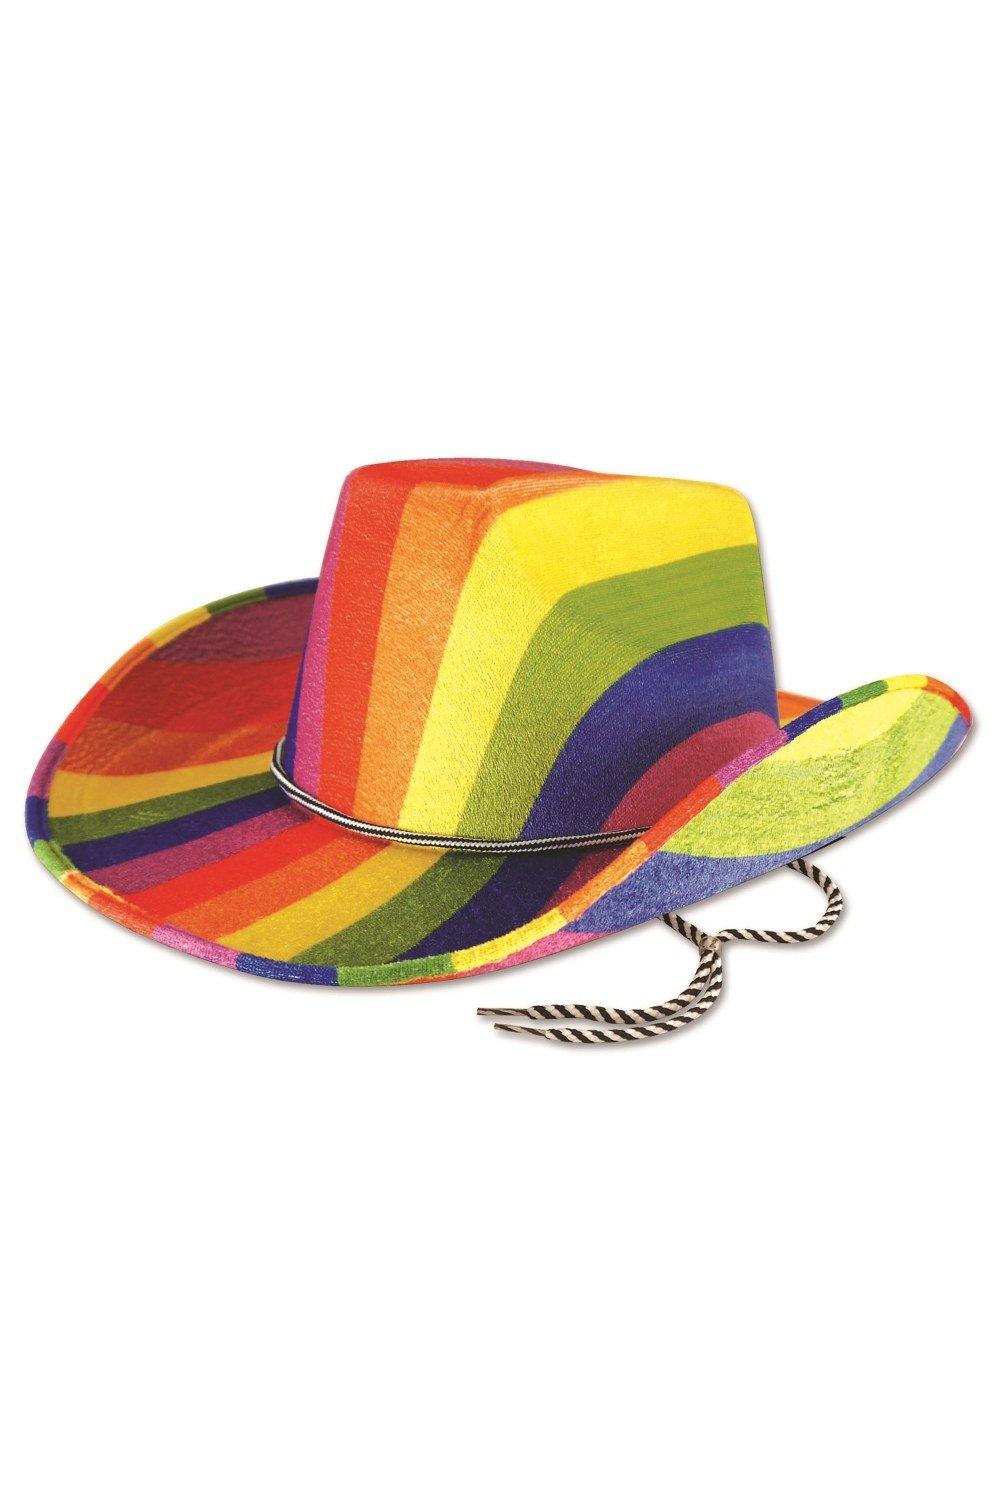 Радужная ковбойская шляпа Bristol Novelty, мультиколор персонализированная широкополая фетровая шляпа портативная дышащая унисекс шляпа женская шляпа ковбойская шляпа